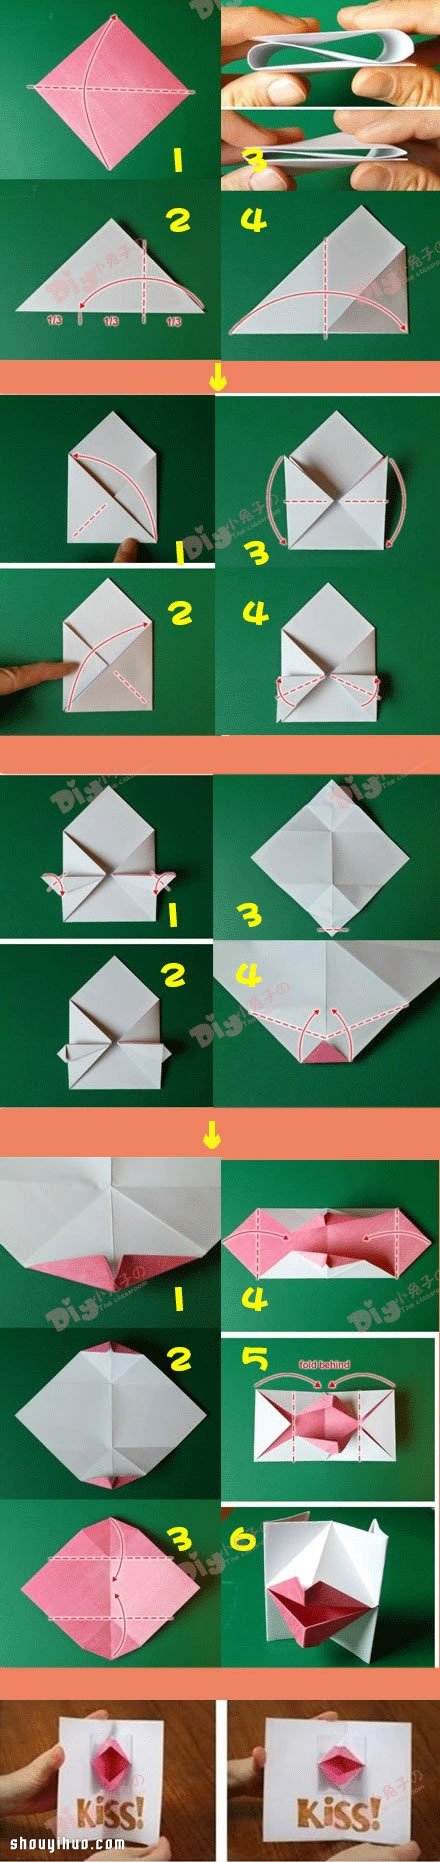 折纸好玩的亲吻贺卡DIY手工制作图解教程